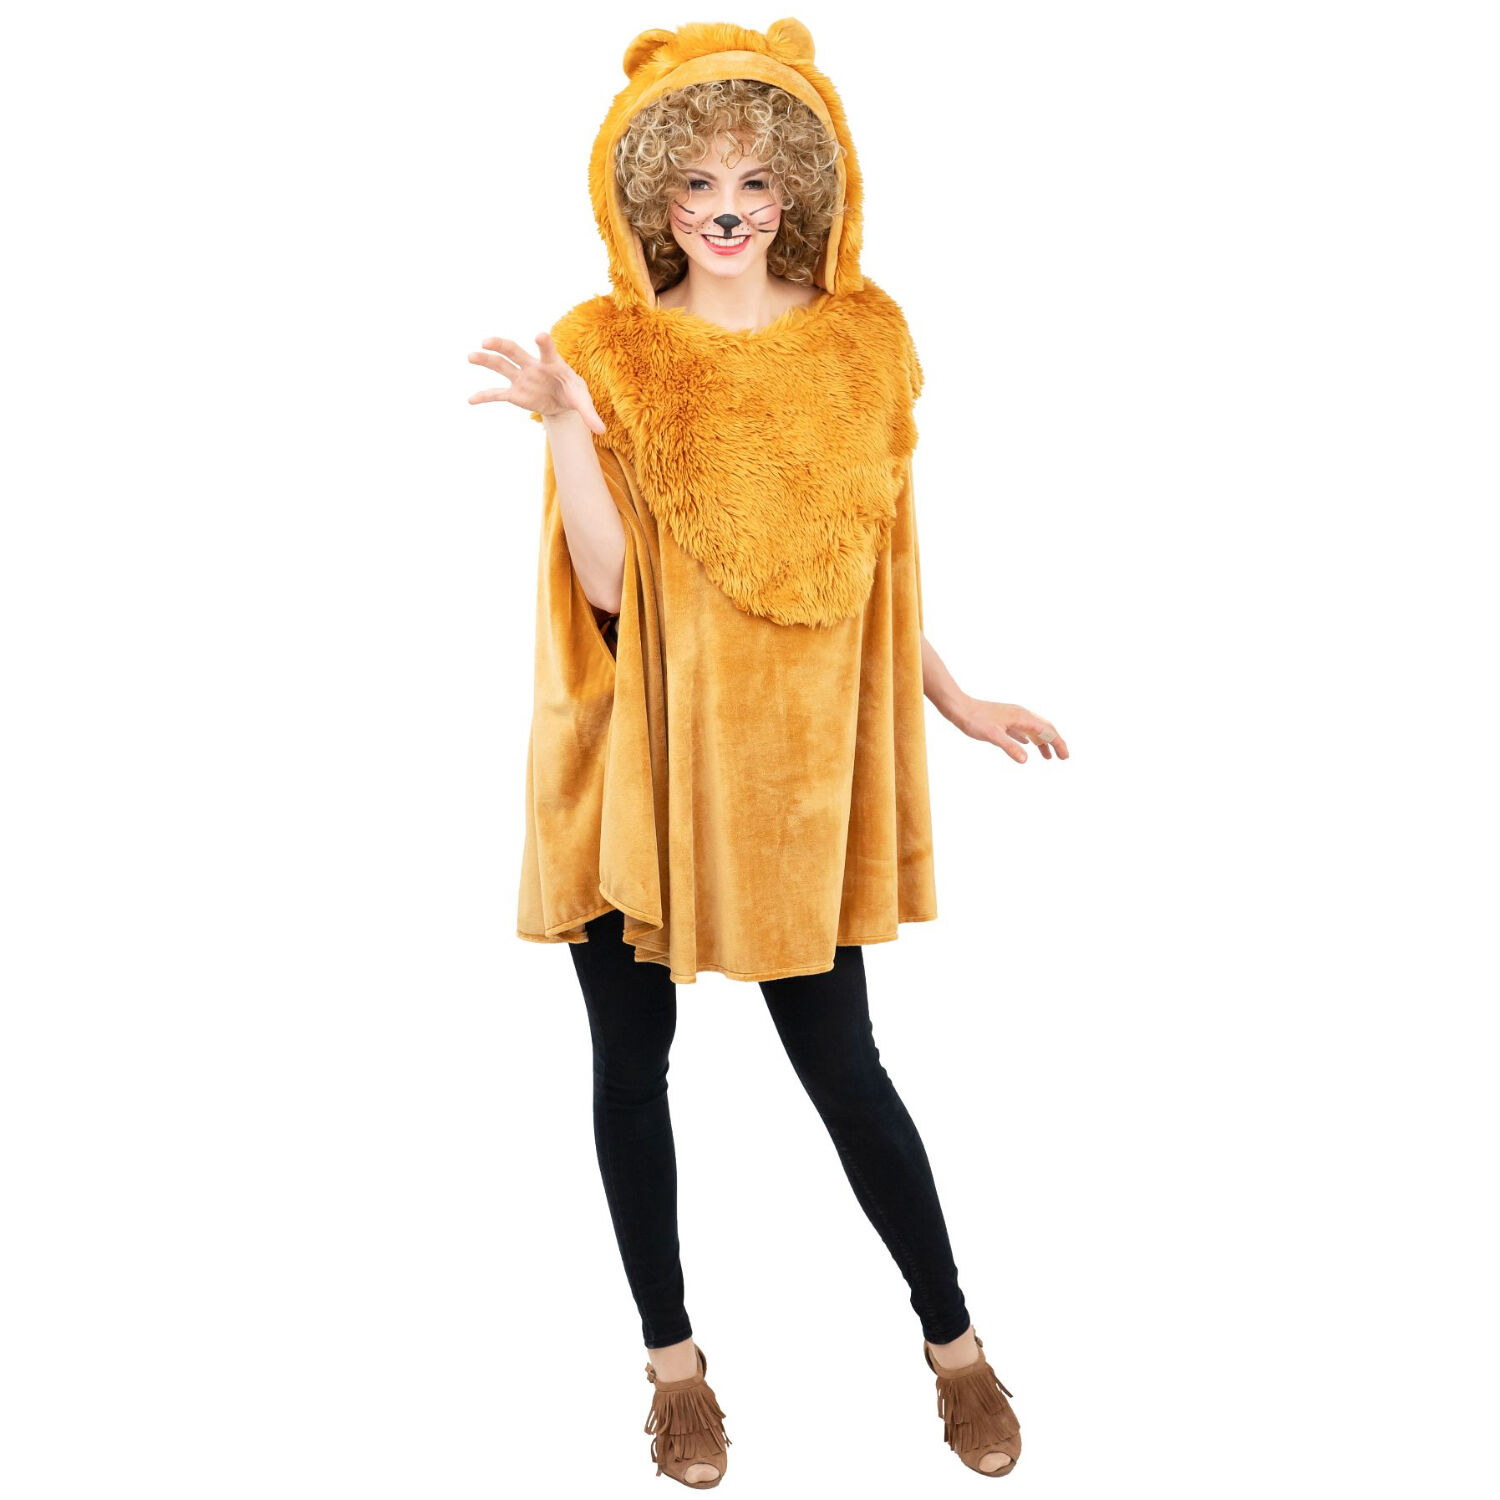 NEU Damen-Kostüm Plüsch-Cape Löwe, mit Pelz-Kapuze und Schwanz, Einheitsgröße